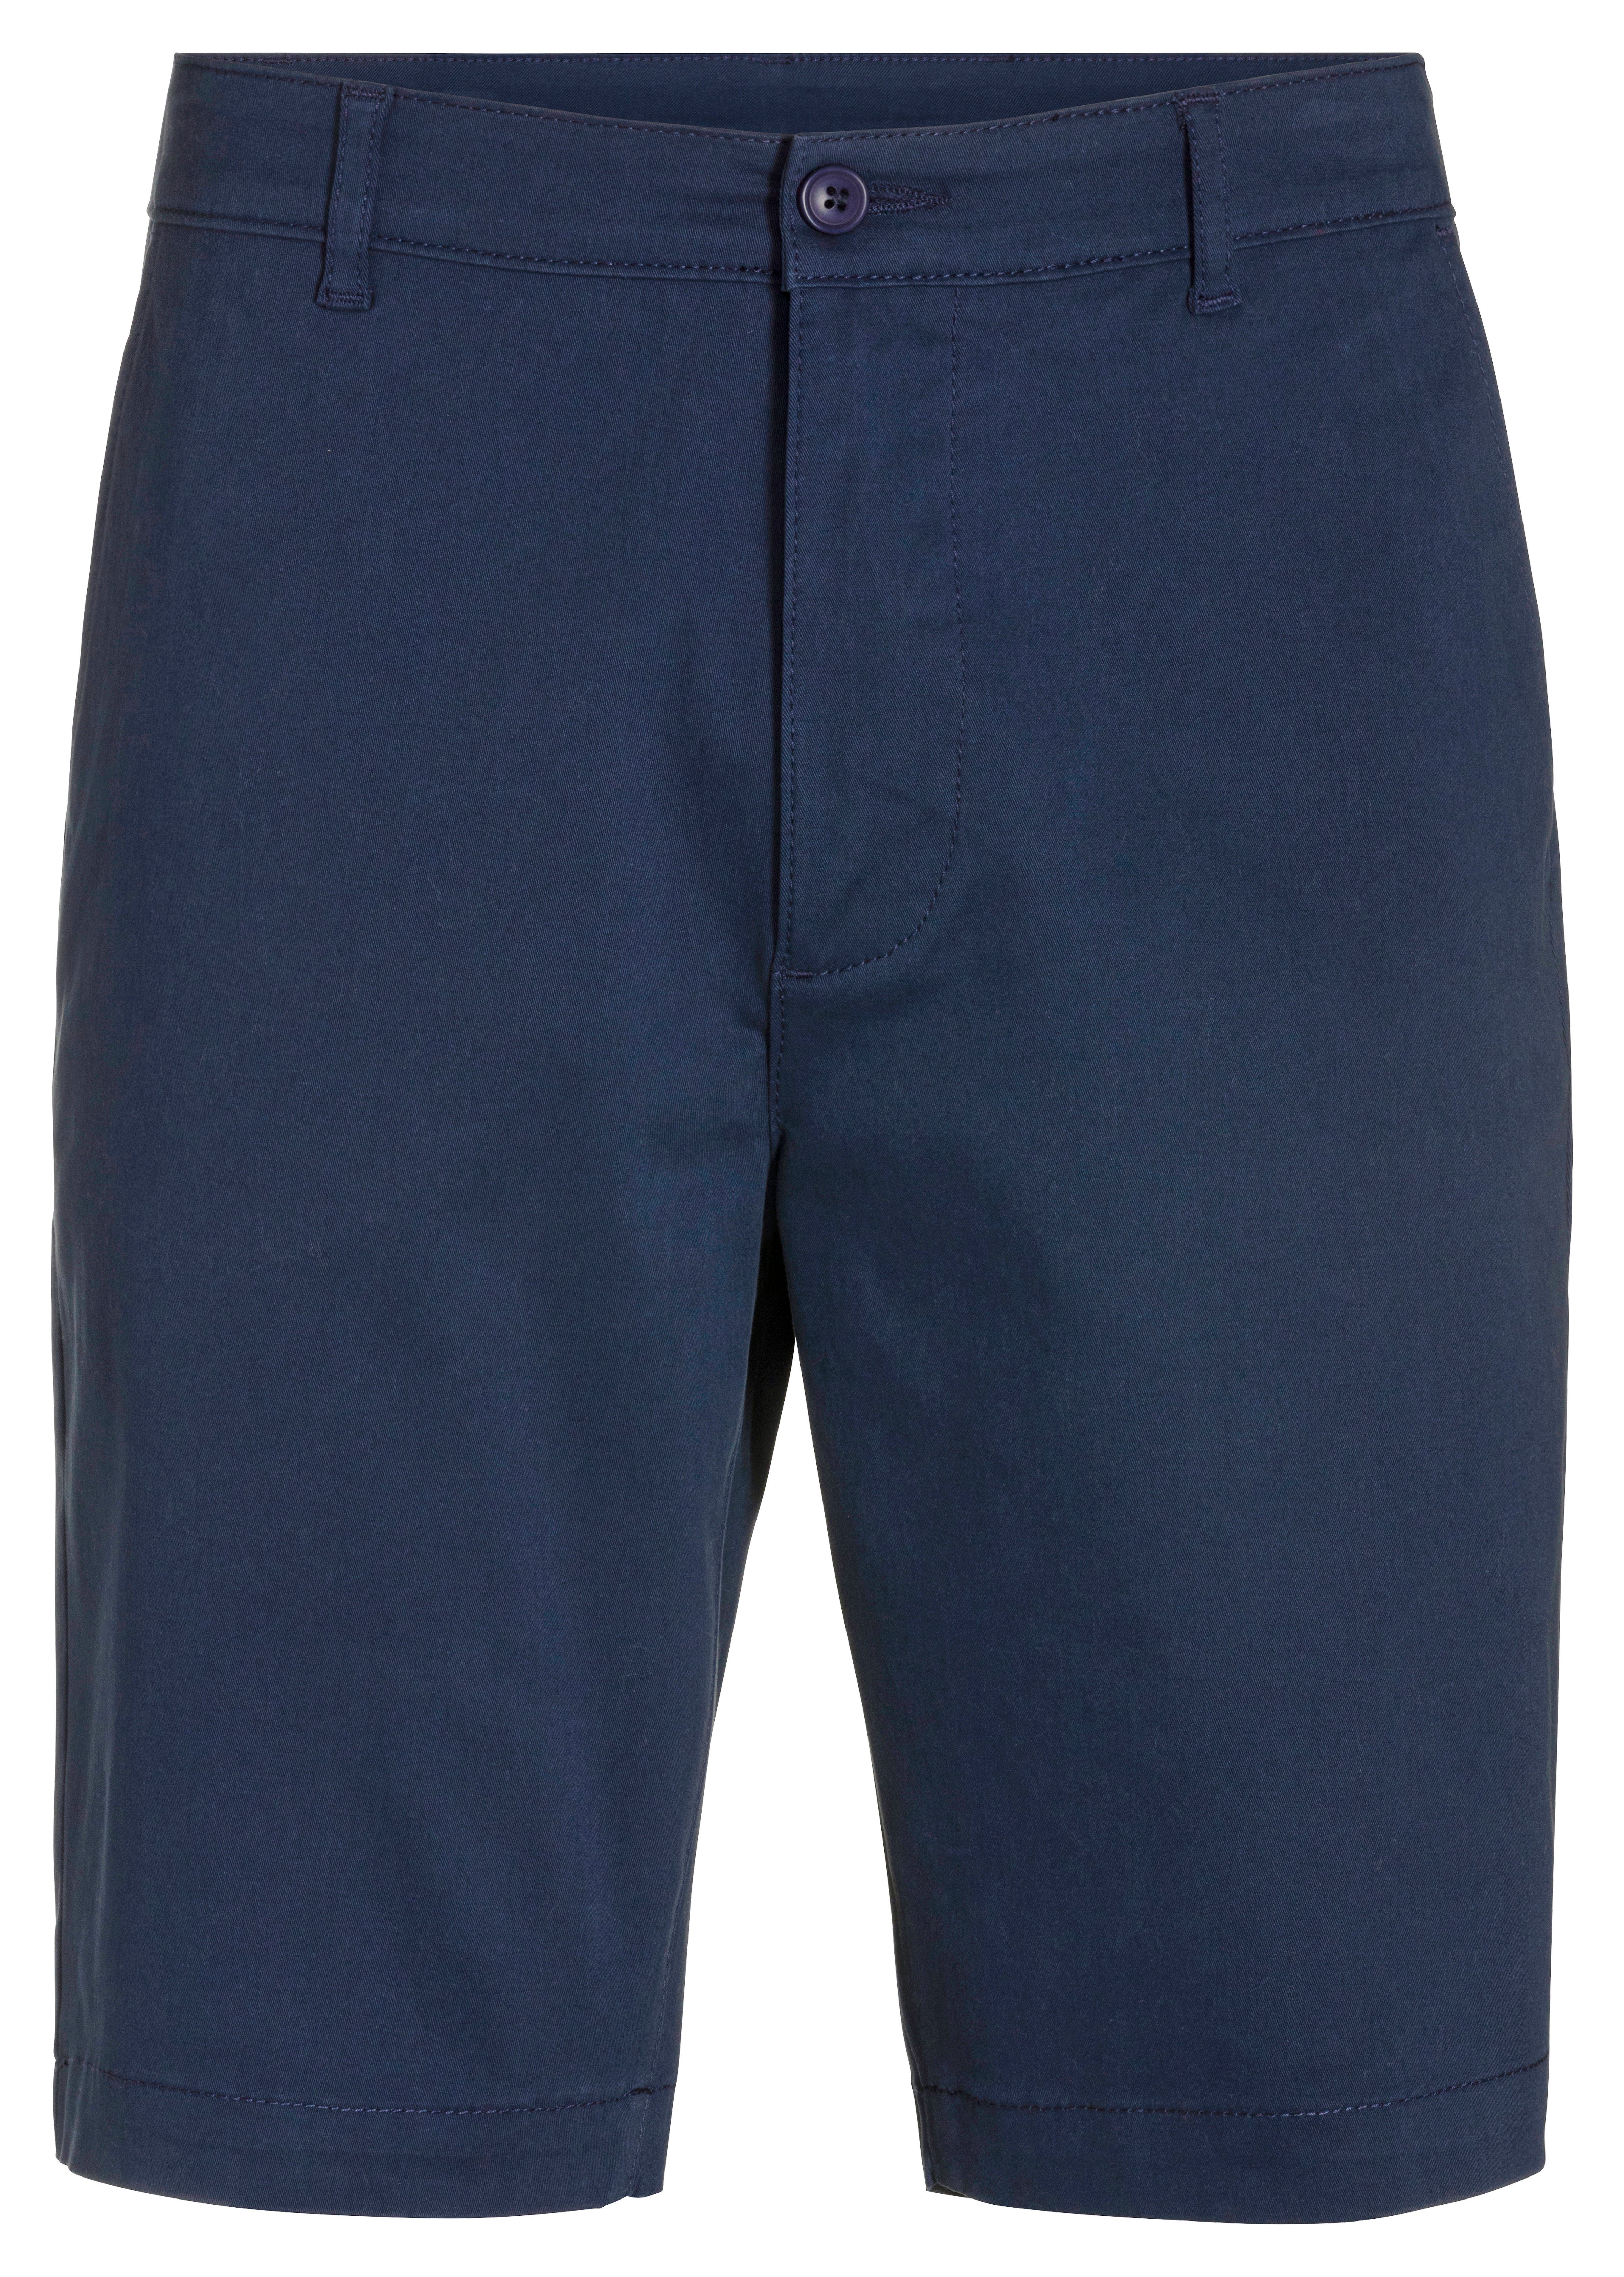 Baumwoll-Qualität Shorts aus navy H.I.S elastischer